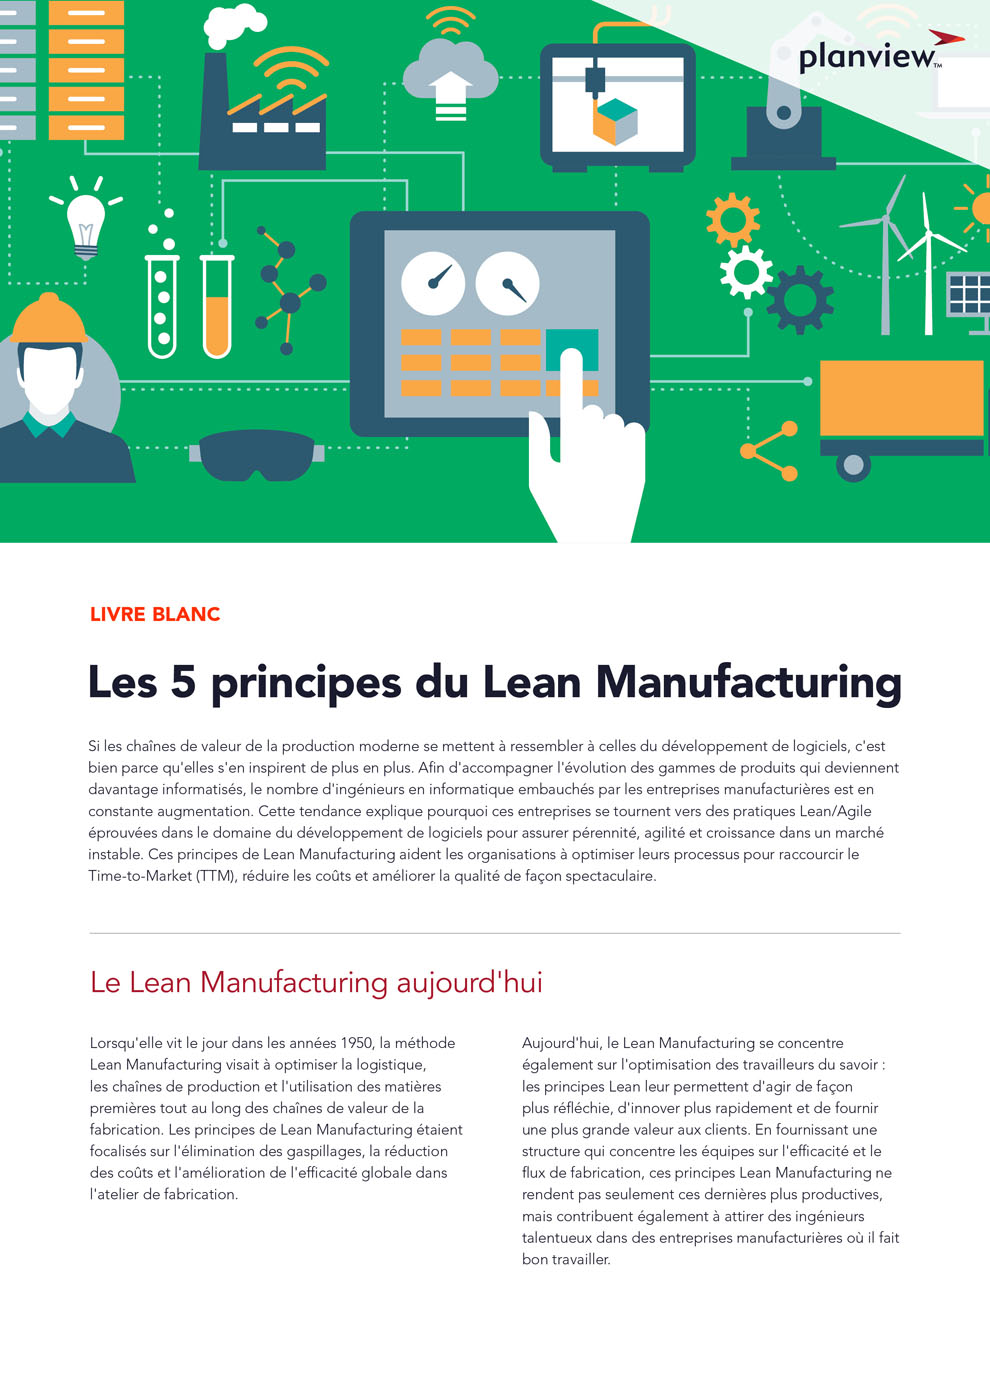 Les 5 principes du Lean Manufacturing